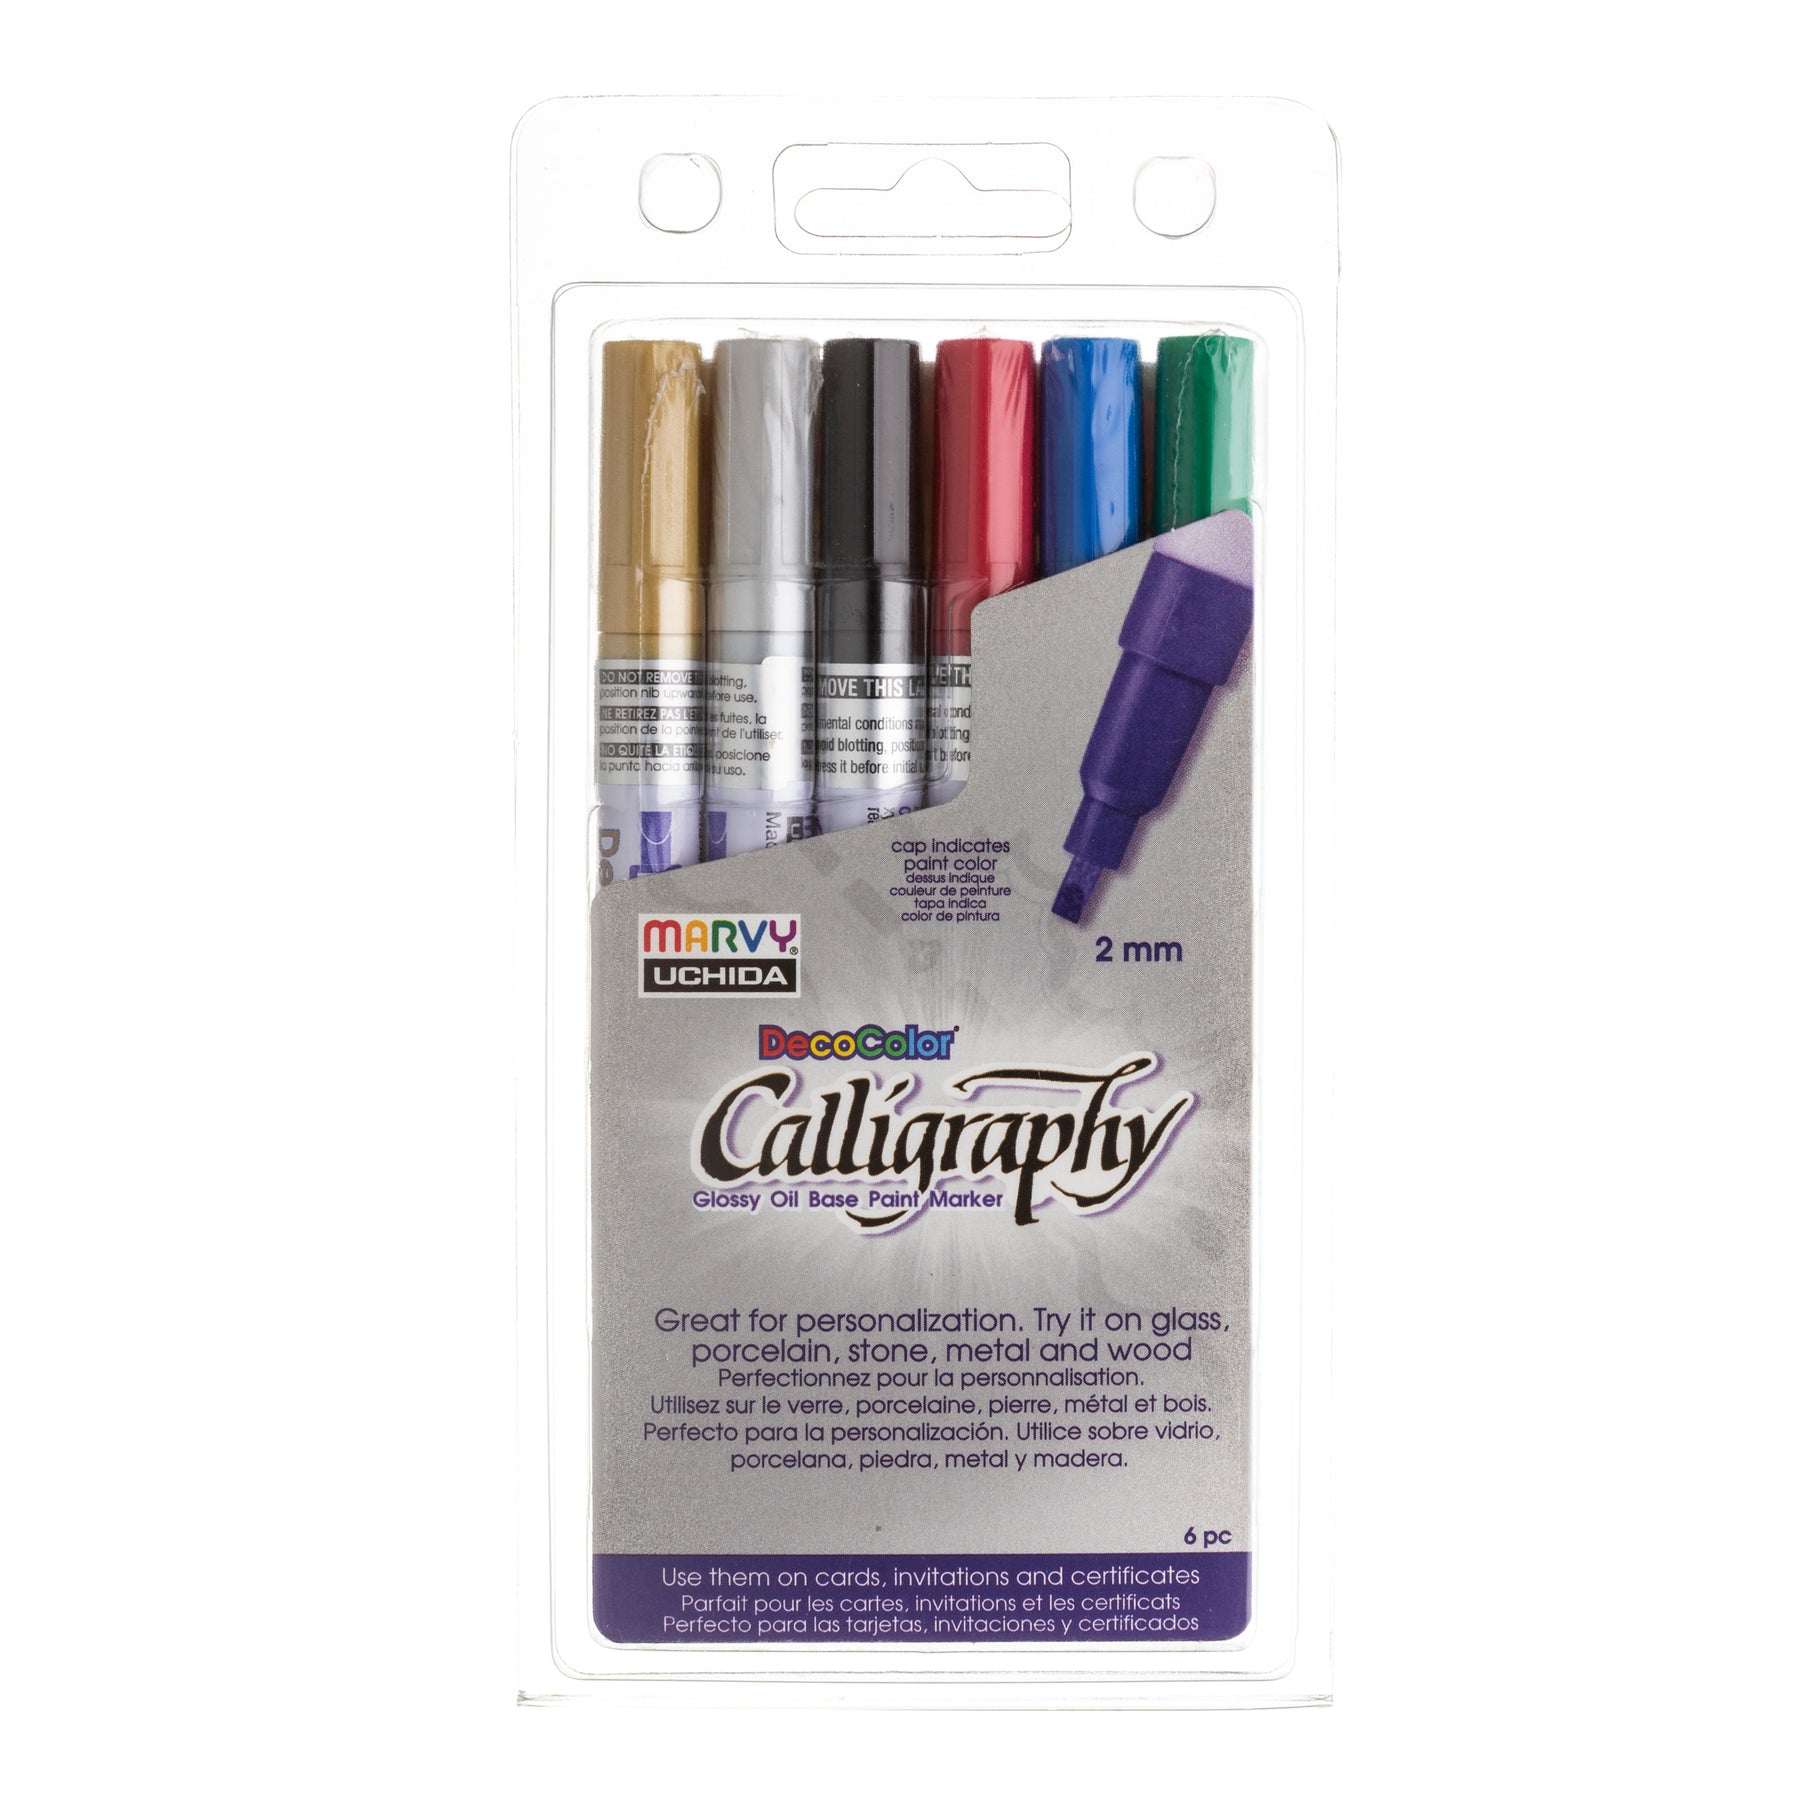 Point Metallic Marker Pen Scrapbooking Crafts Art Supplies Marker Pen Set